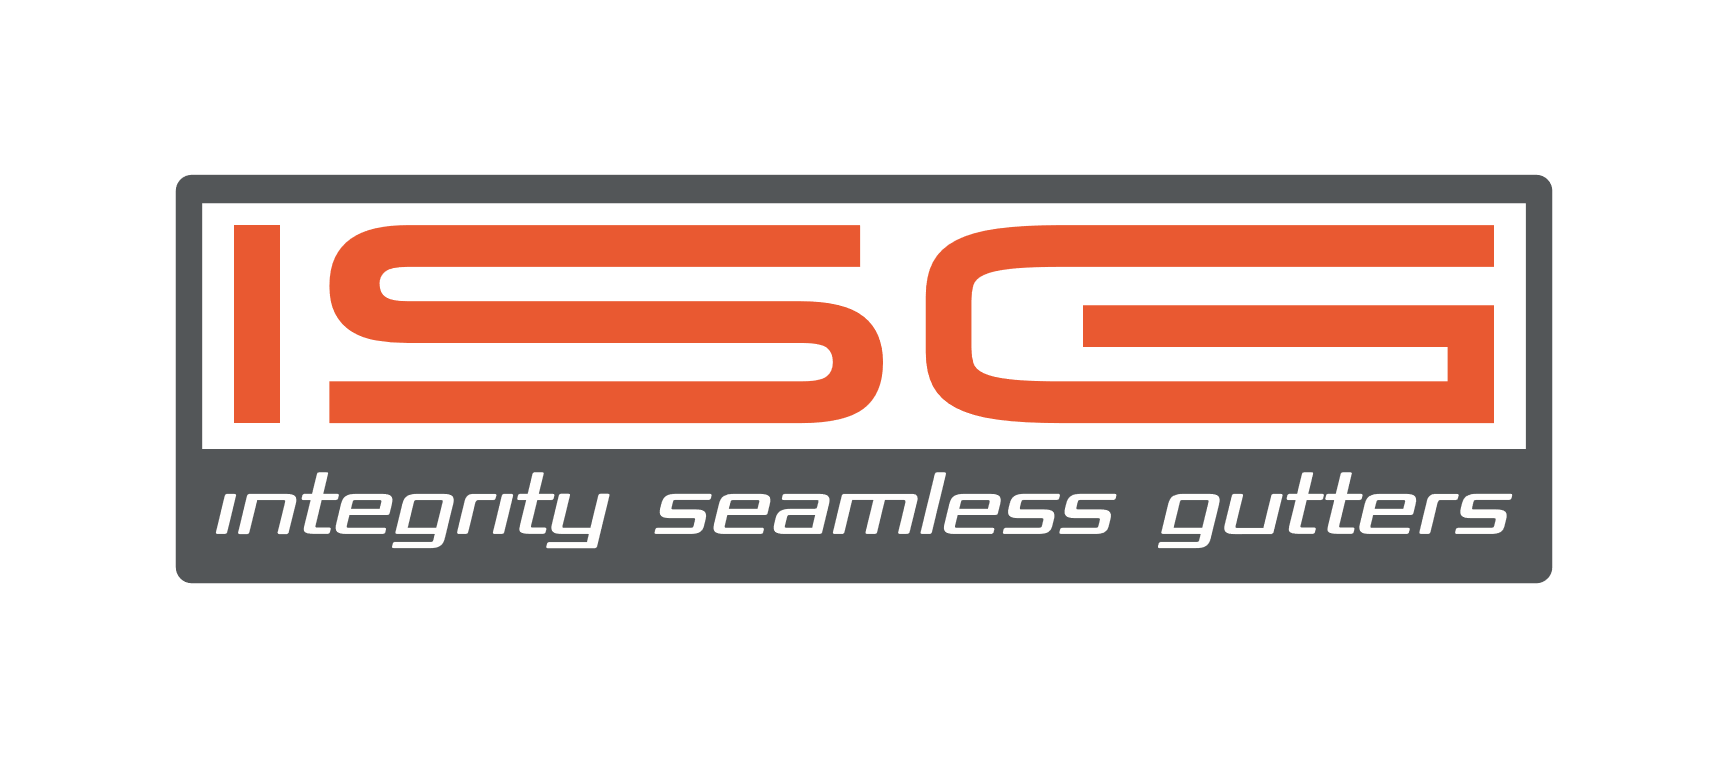 Integrity Seamless Gutters & Construction, LLC Logo